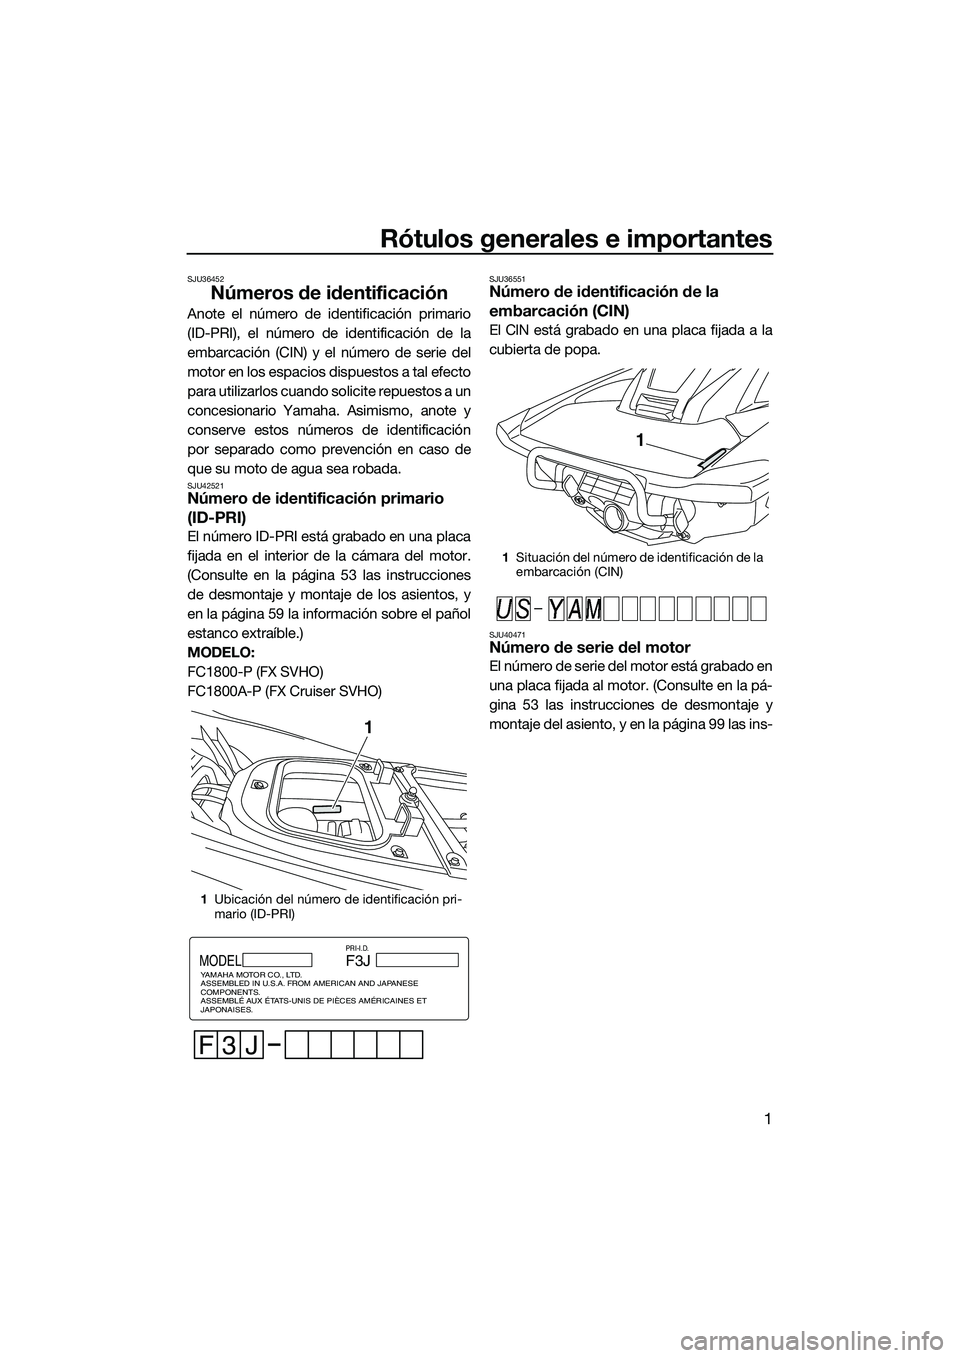 YAMAHA FX SVHO 2015  Manuale de Empleo (in Spanish) Rótulos generales e importantes
1
SJU36452
Números de identificación
Anote el número de identificación primario
(ID-PRI), el número de identificación de la
embarcación (CIN) y el número de se